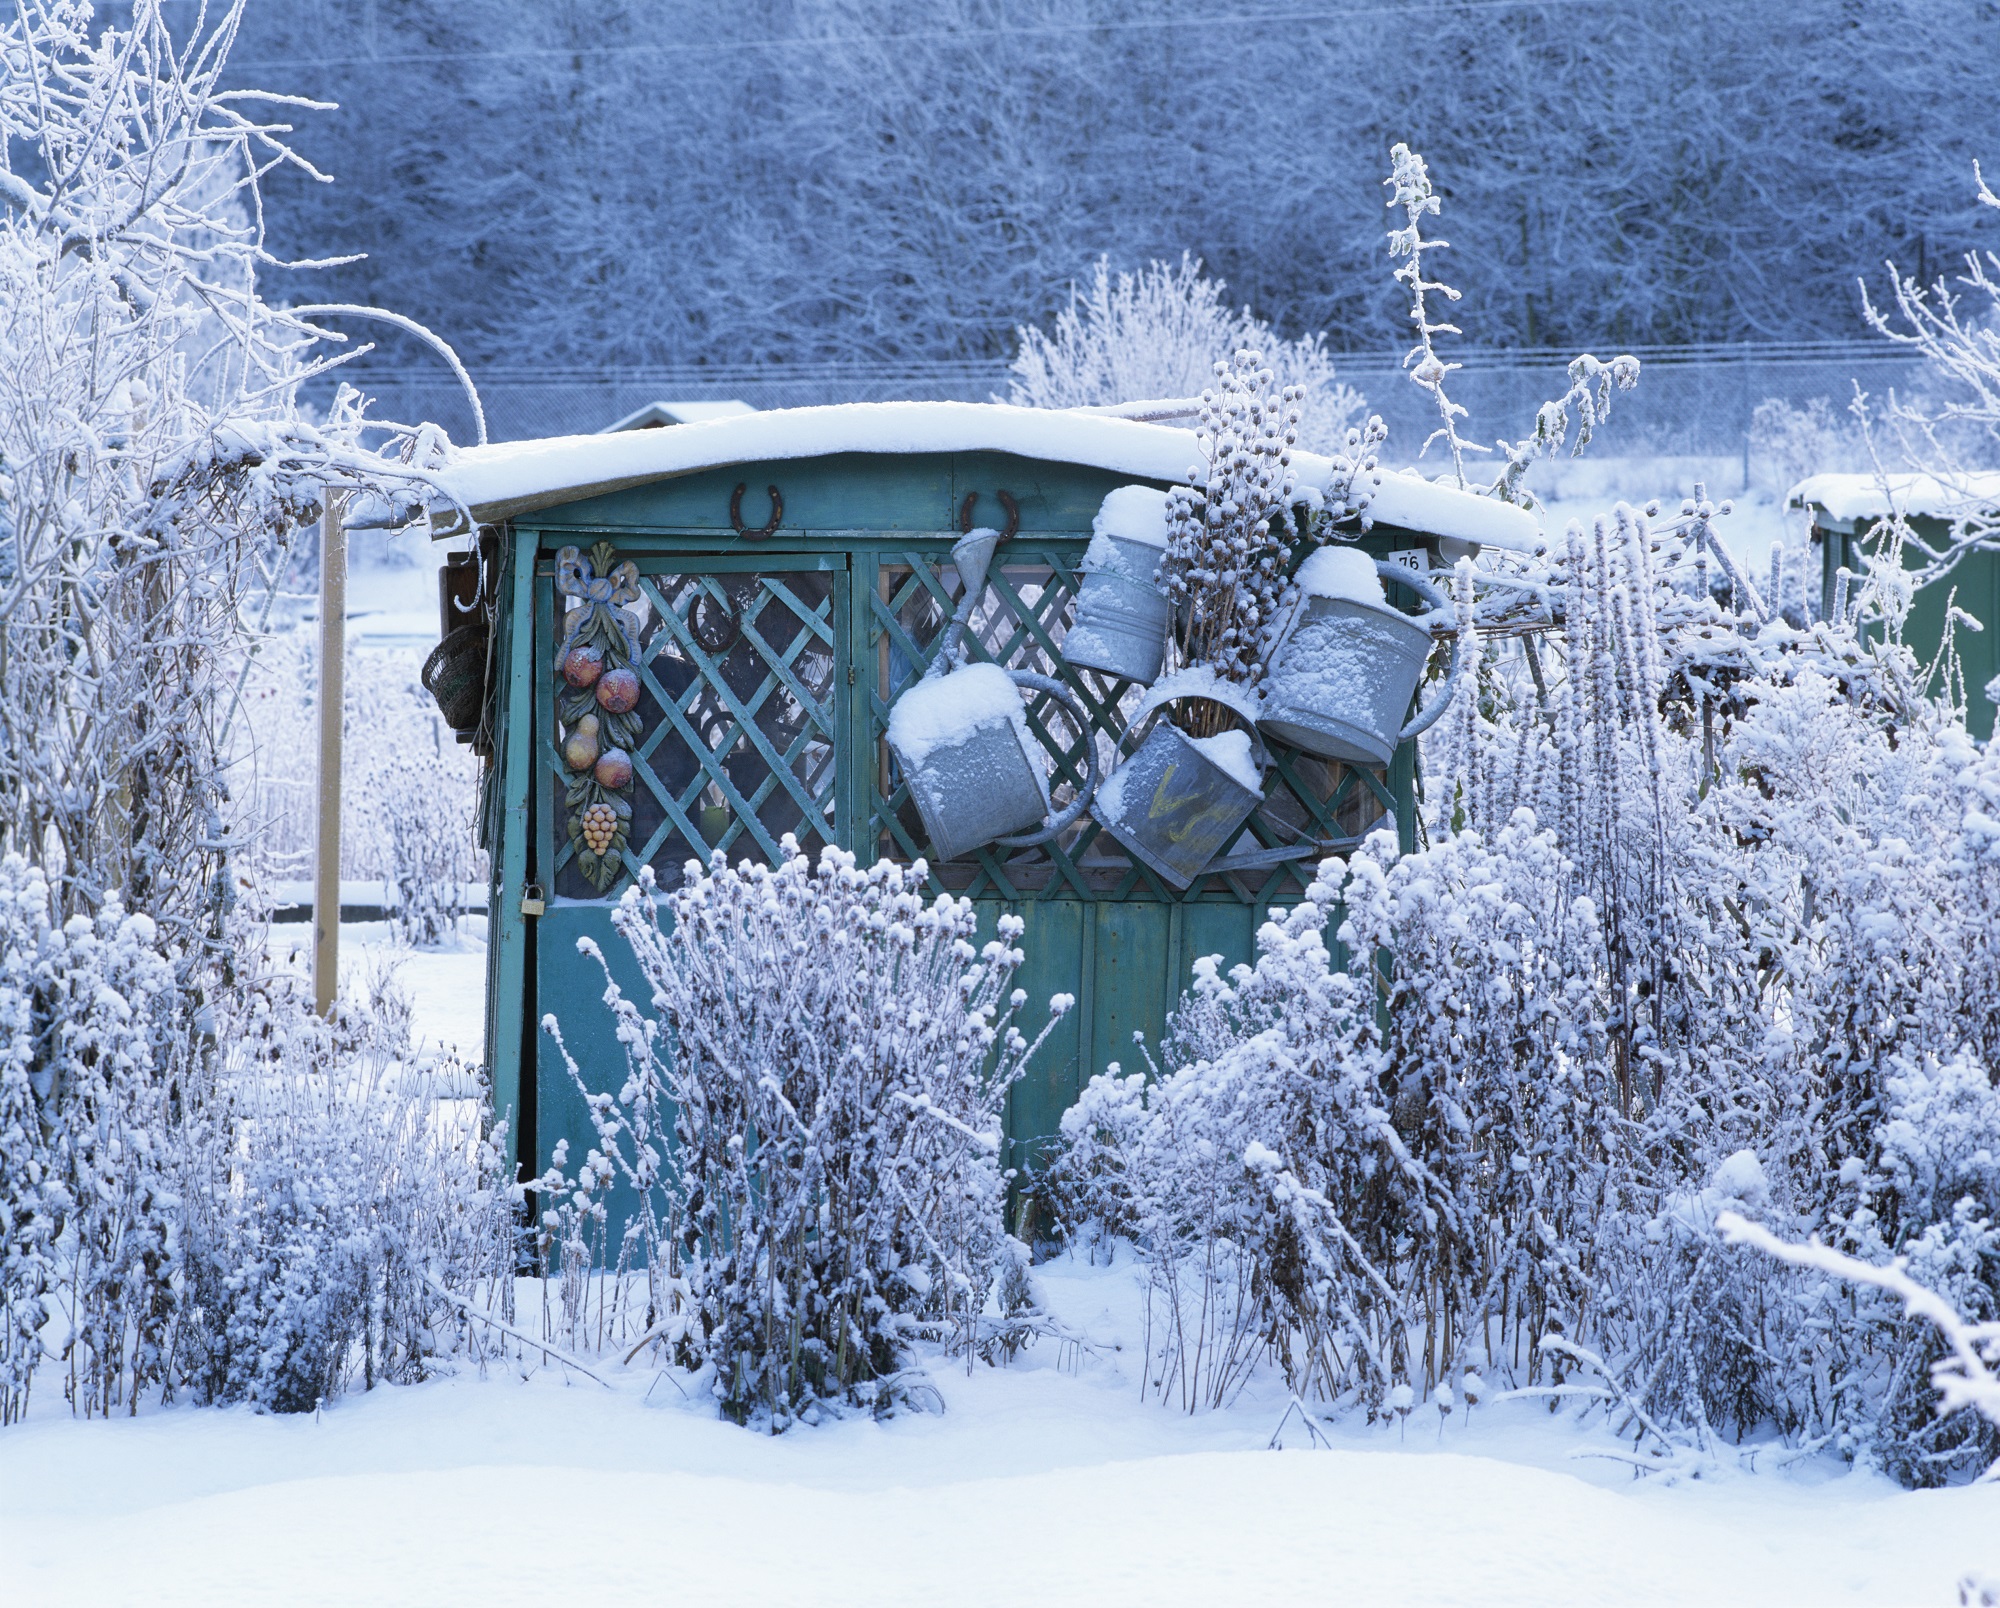 Календарь садовода и огородника на декабрь. Источник фото: Shutterstock